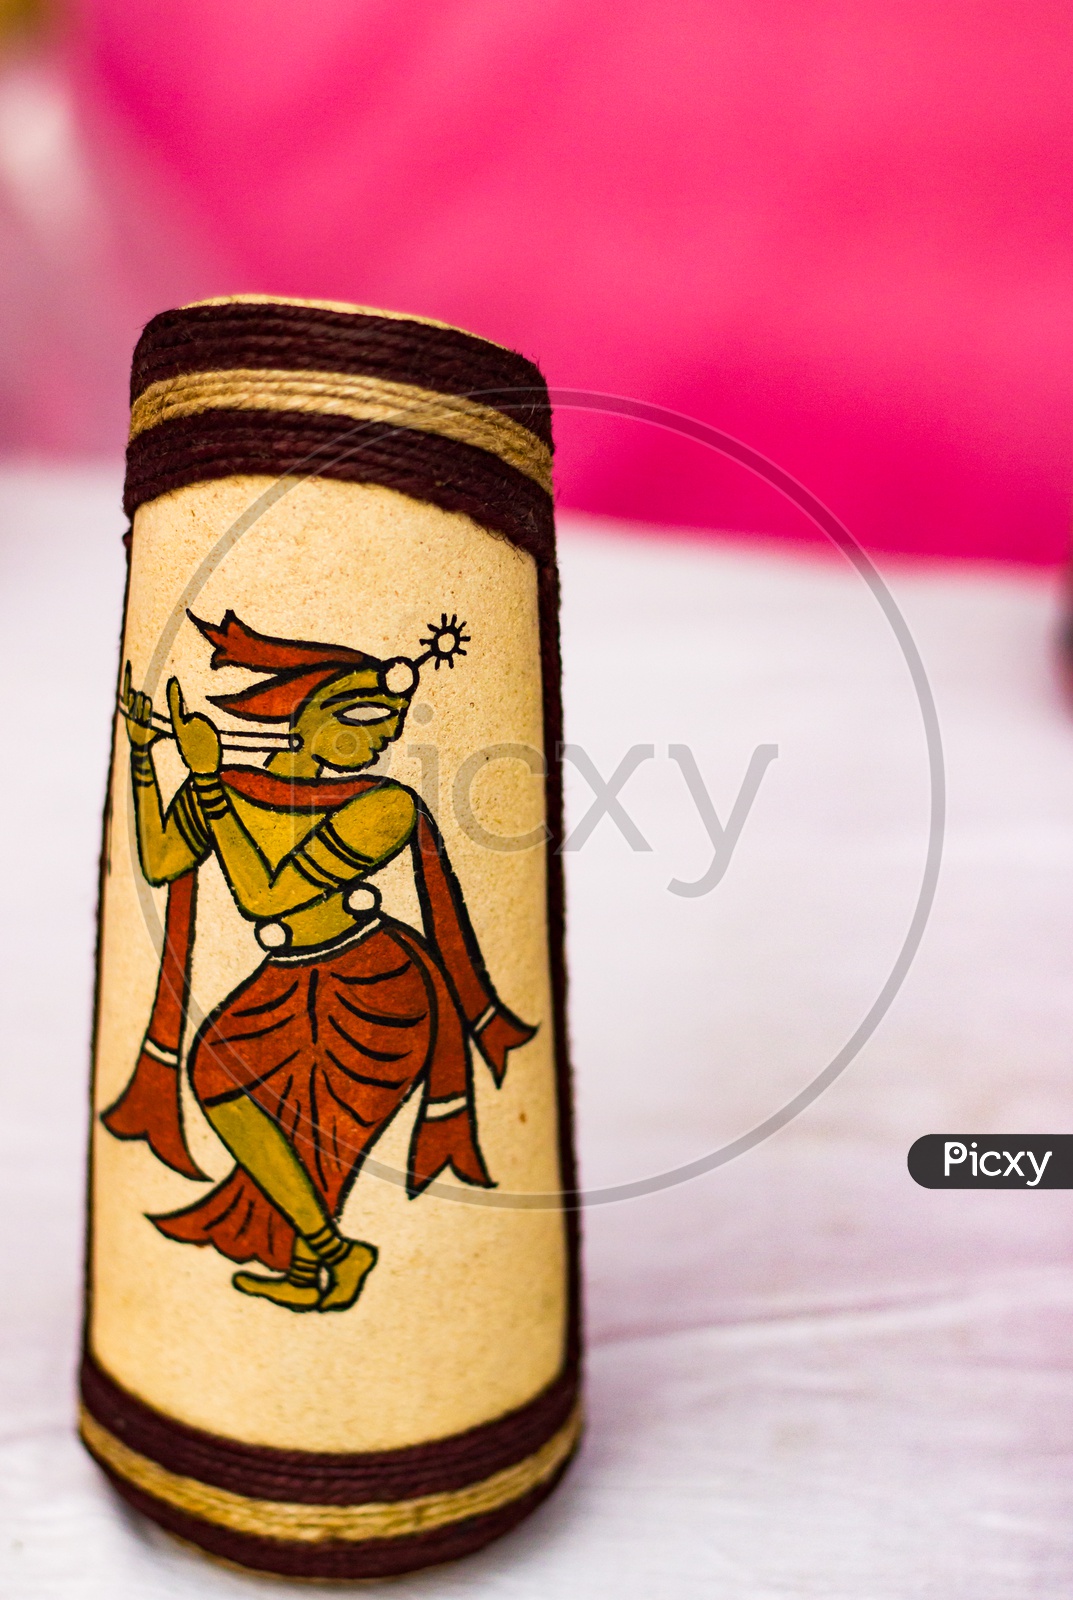 Colourful Figure Of Lord Krishna Drawn On A Vase. Indian God Mythology